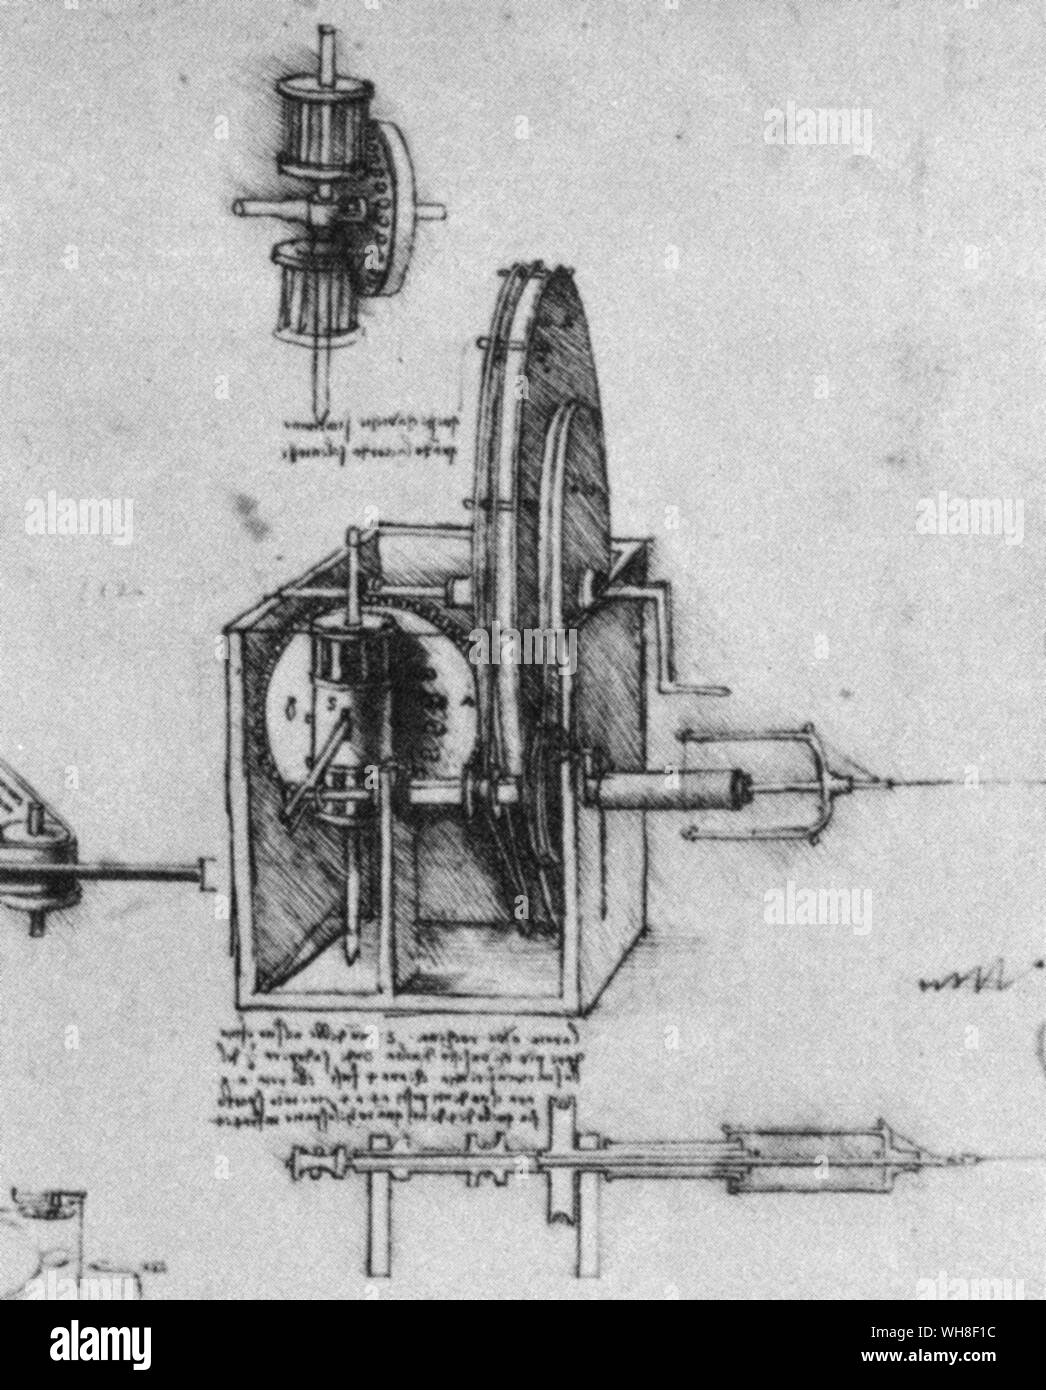 Ein Flyer der Spindel in der Mitte - Vordergrund von Leonardos Zeichnung. Leonardo da Vinci (1452-1519) war ein italienischer Renaissance Architekt, Musiker, Anatom, Erfinder, Ingenieur, Bildhauer, Geometer und Maler. . . Stockfoto